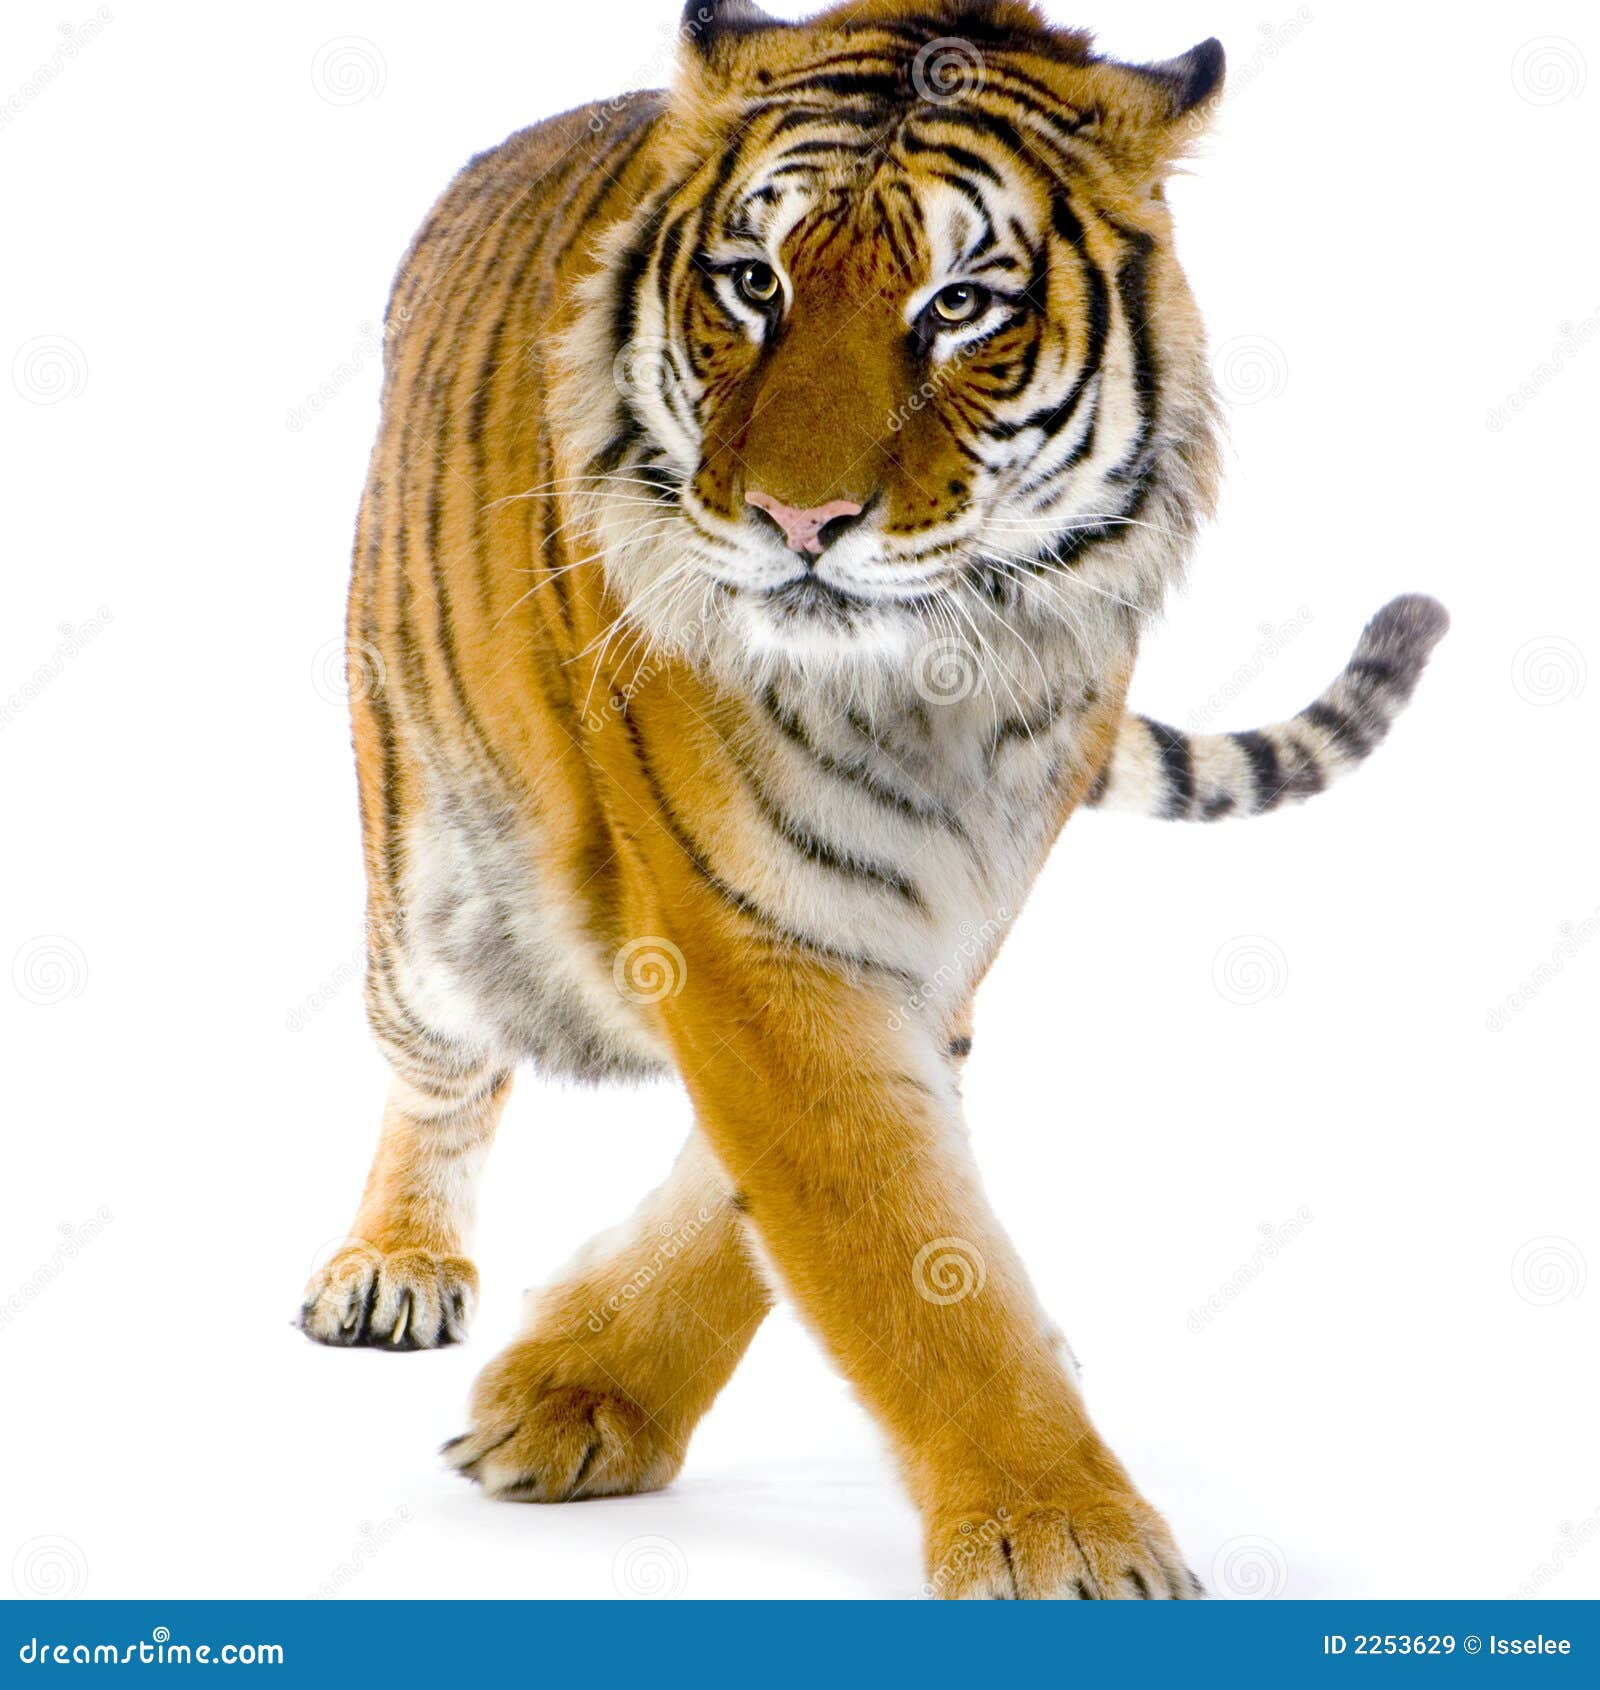 Tiger Walking Royalty Free Stock Images - Image: 2253629